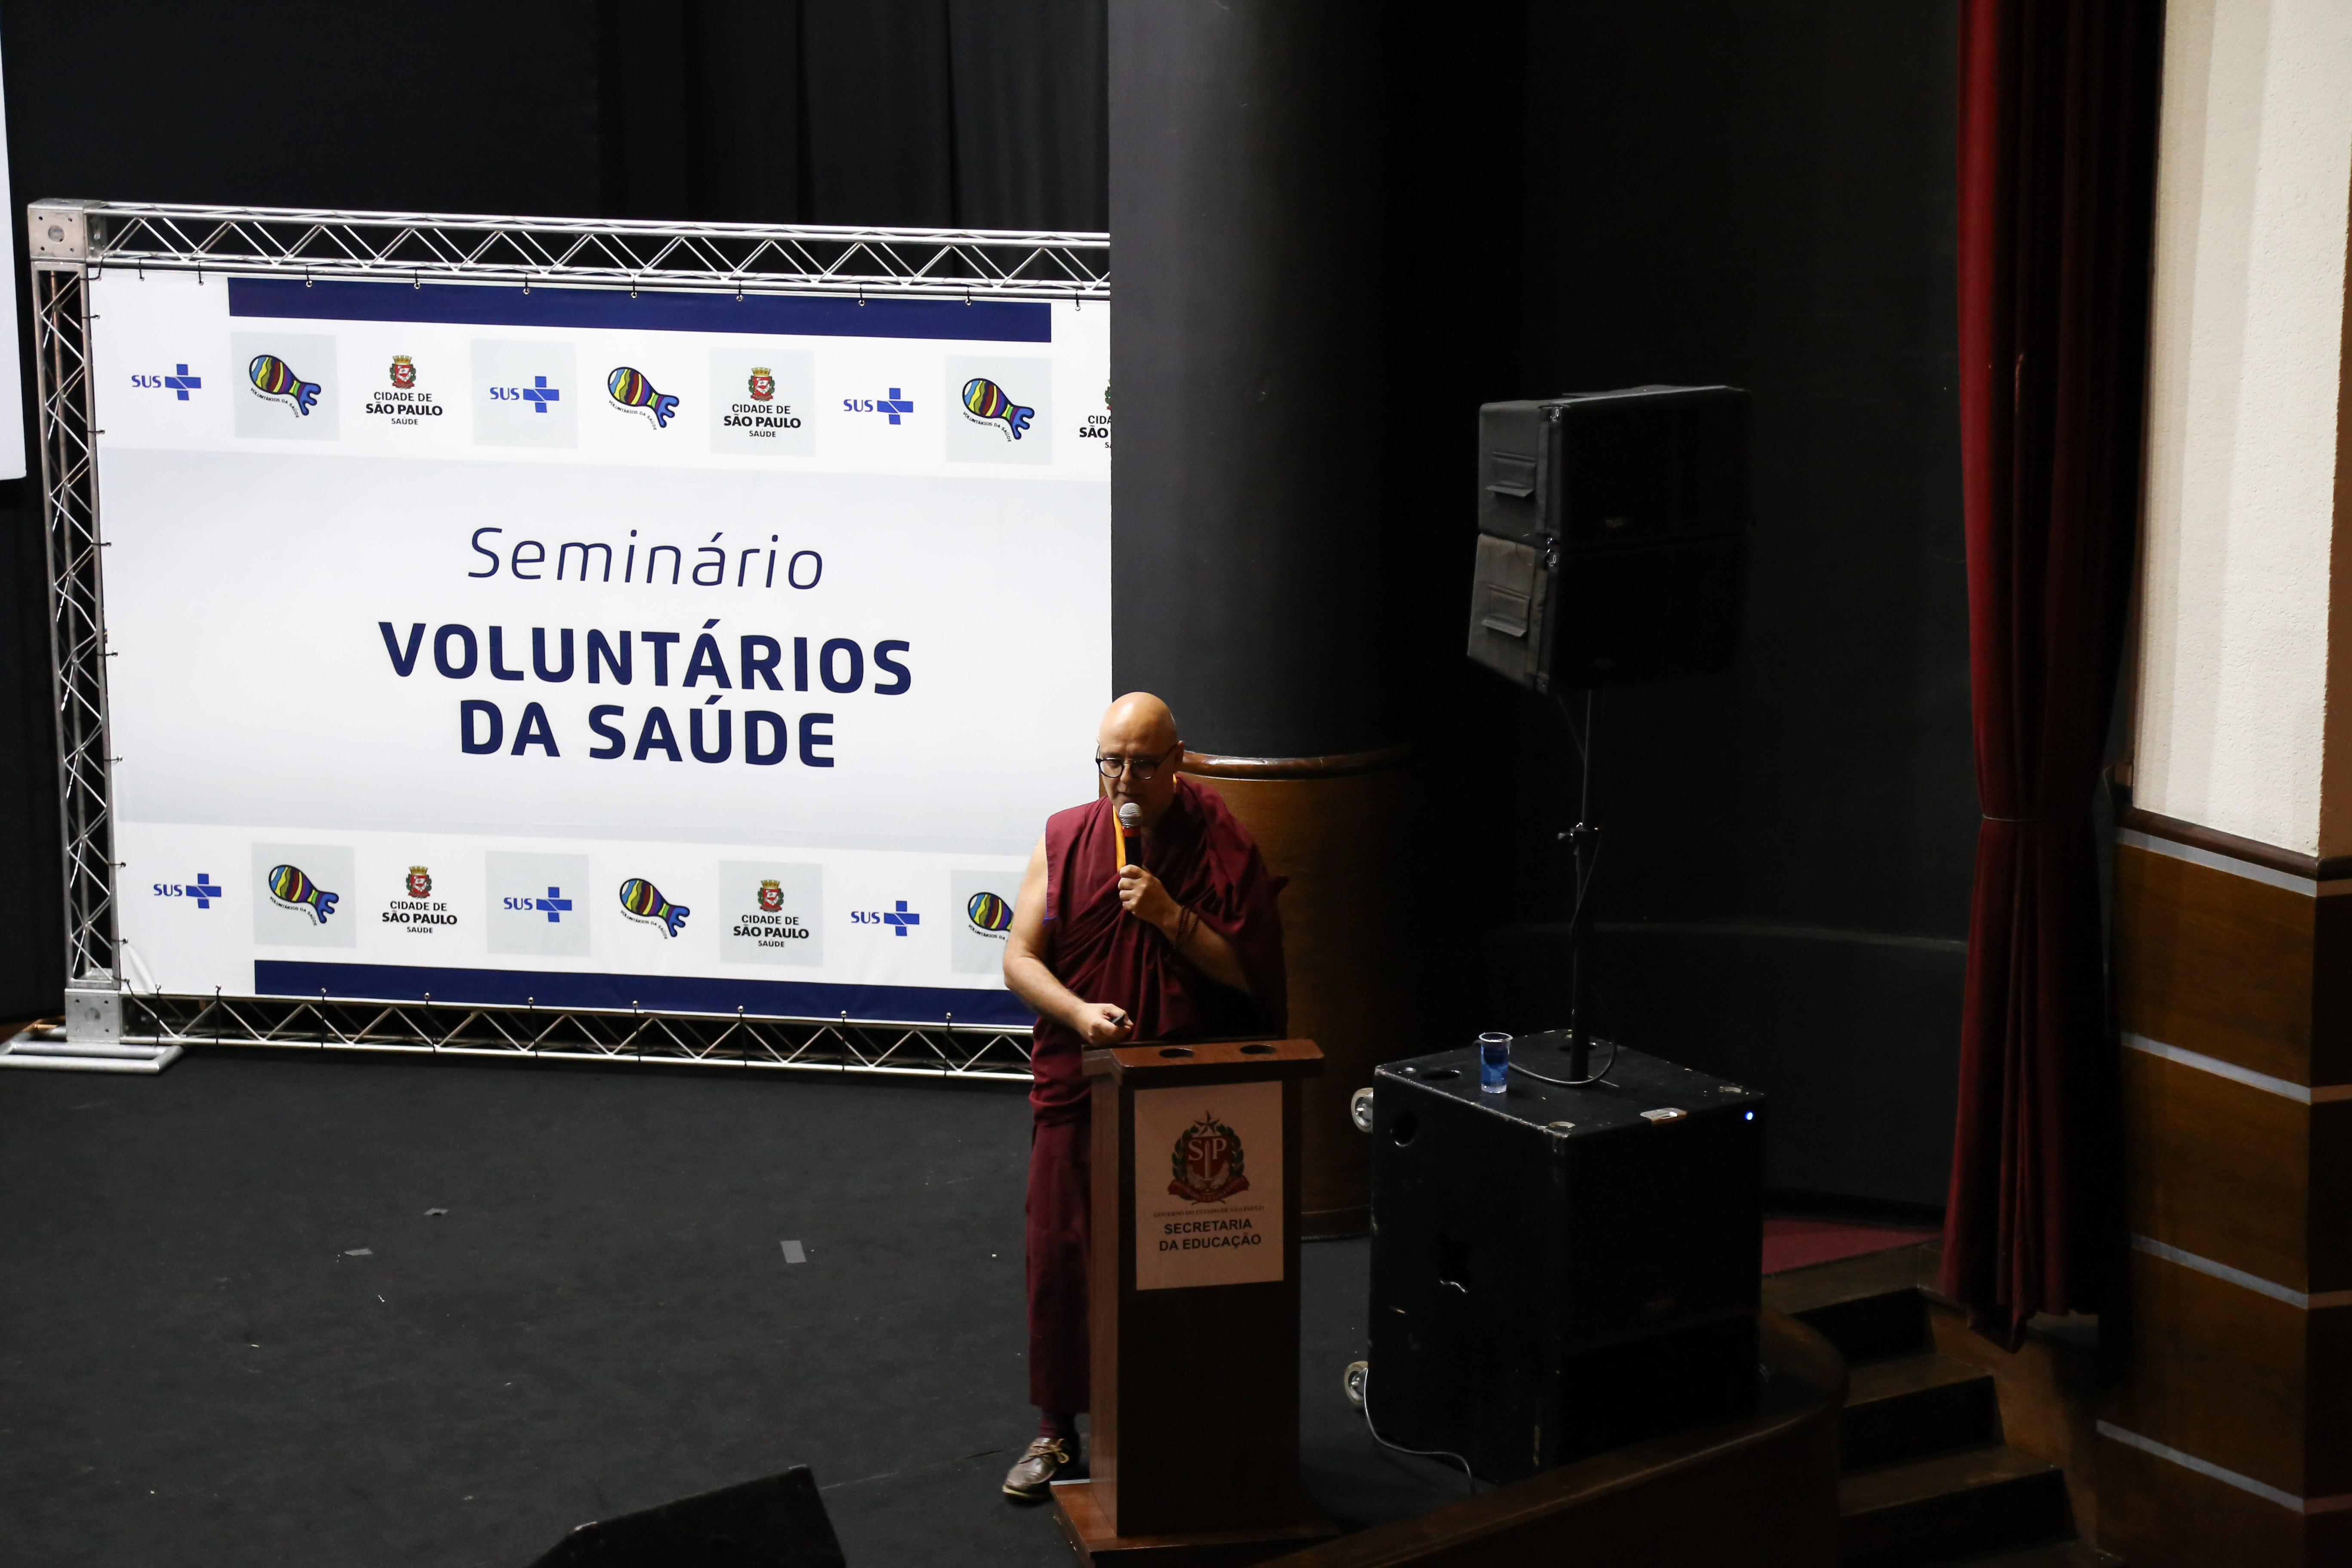 #Paracegover Na imagem está o monge em cima do palco conversando com o público, atrás dele está um banner escrito Seminário Voluntários da Saúde